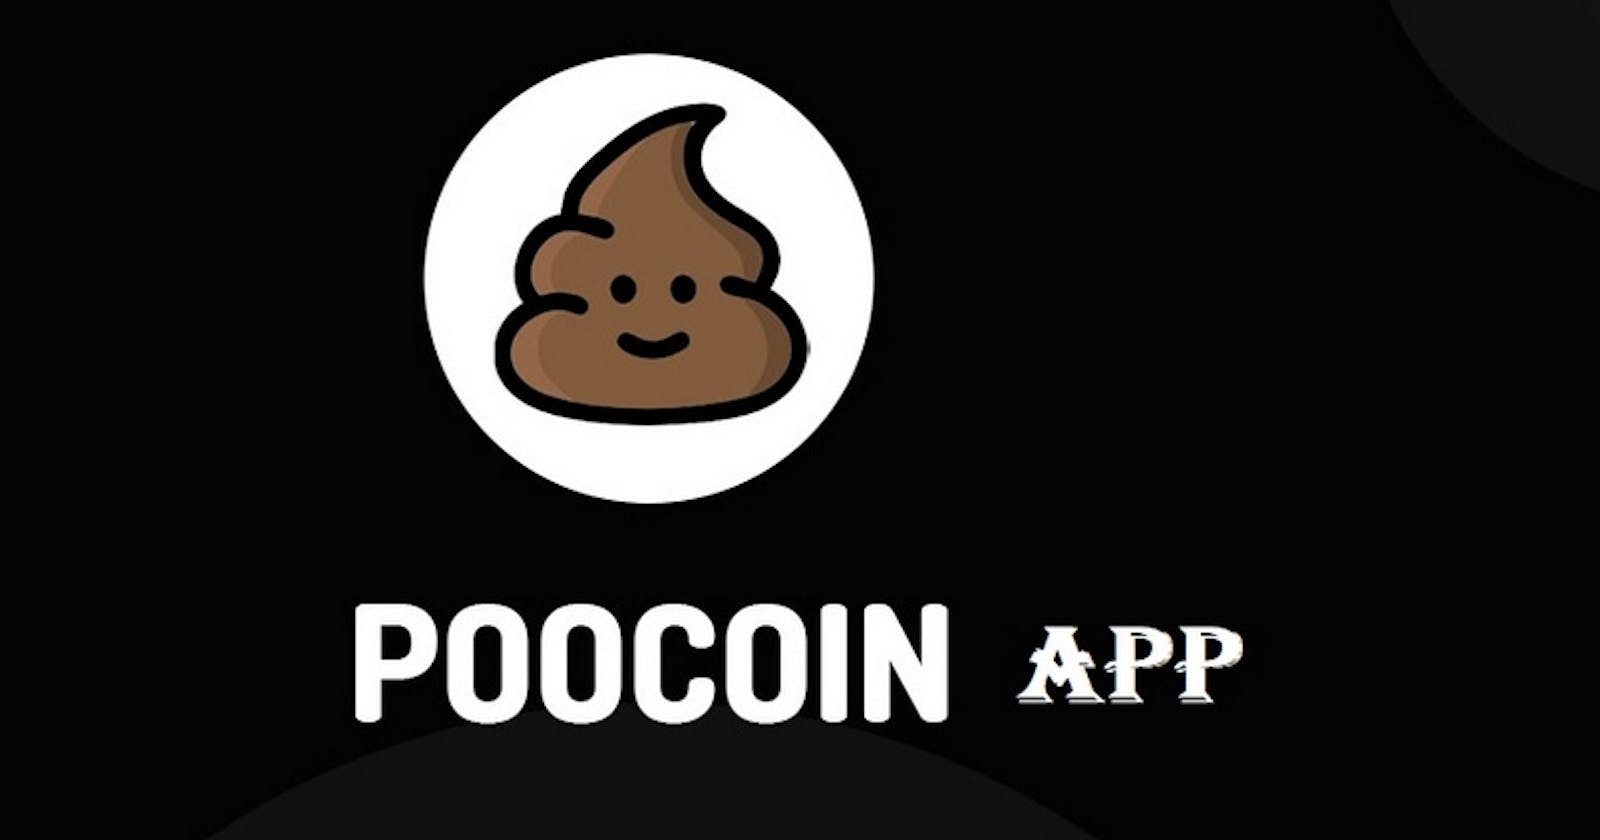 PooCoin App là gì? Hướng dẫn sử dụng PooCoin App